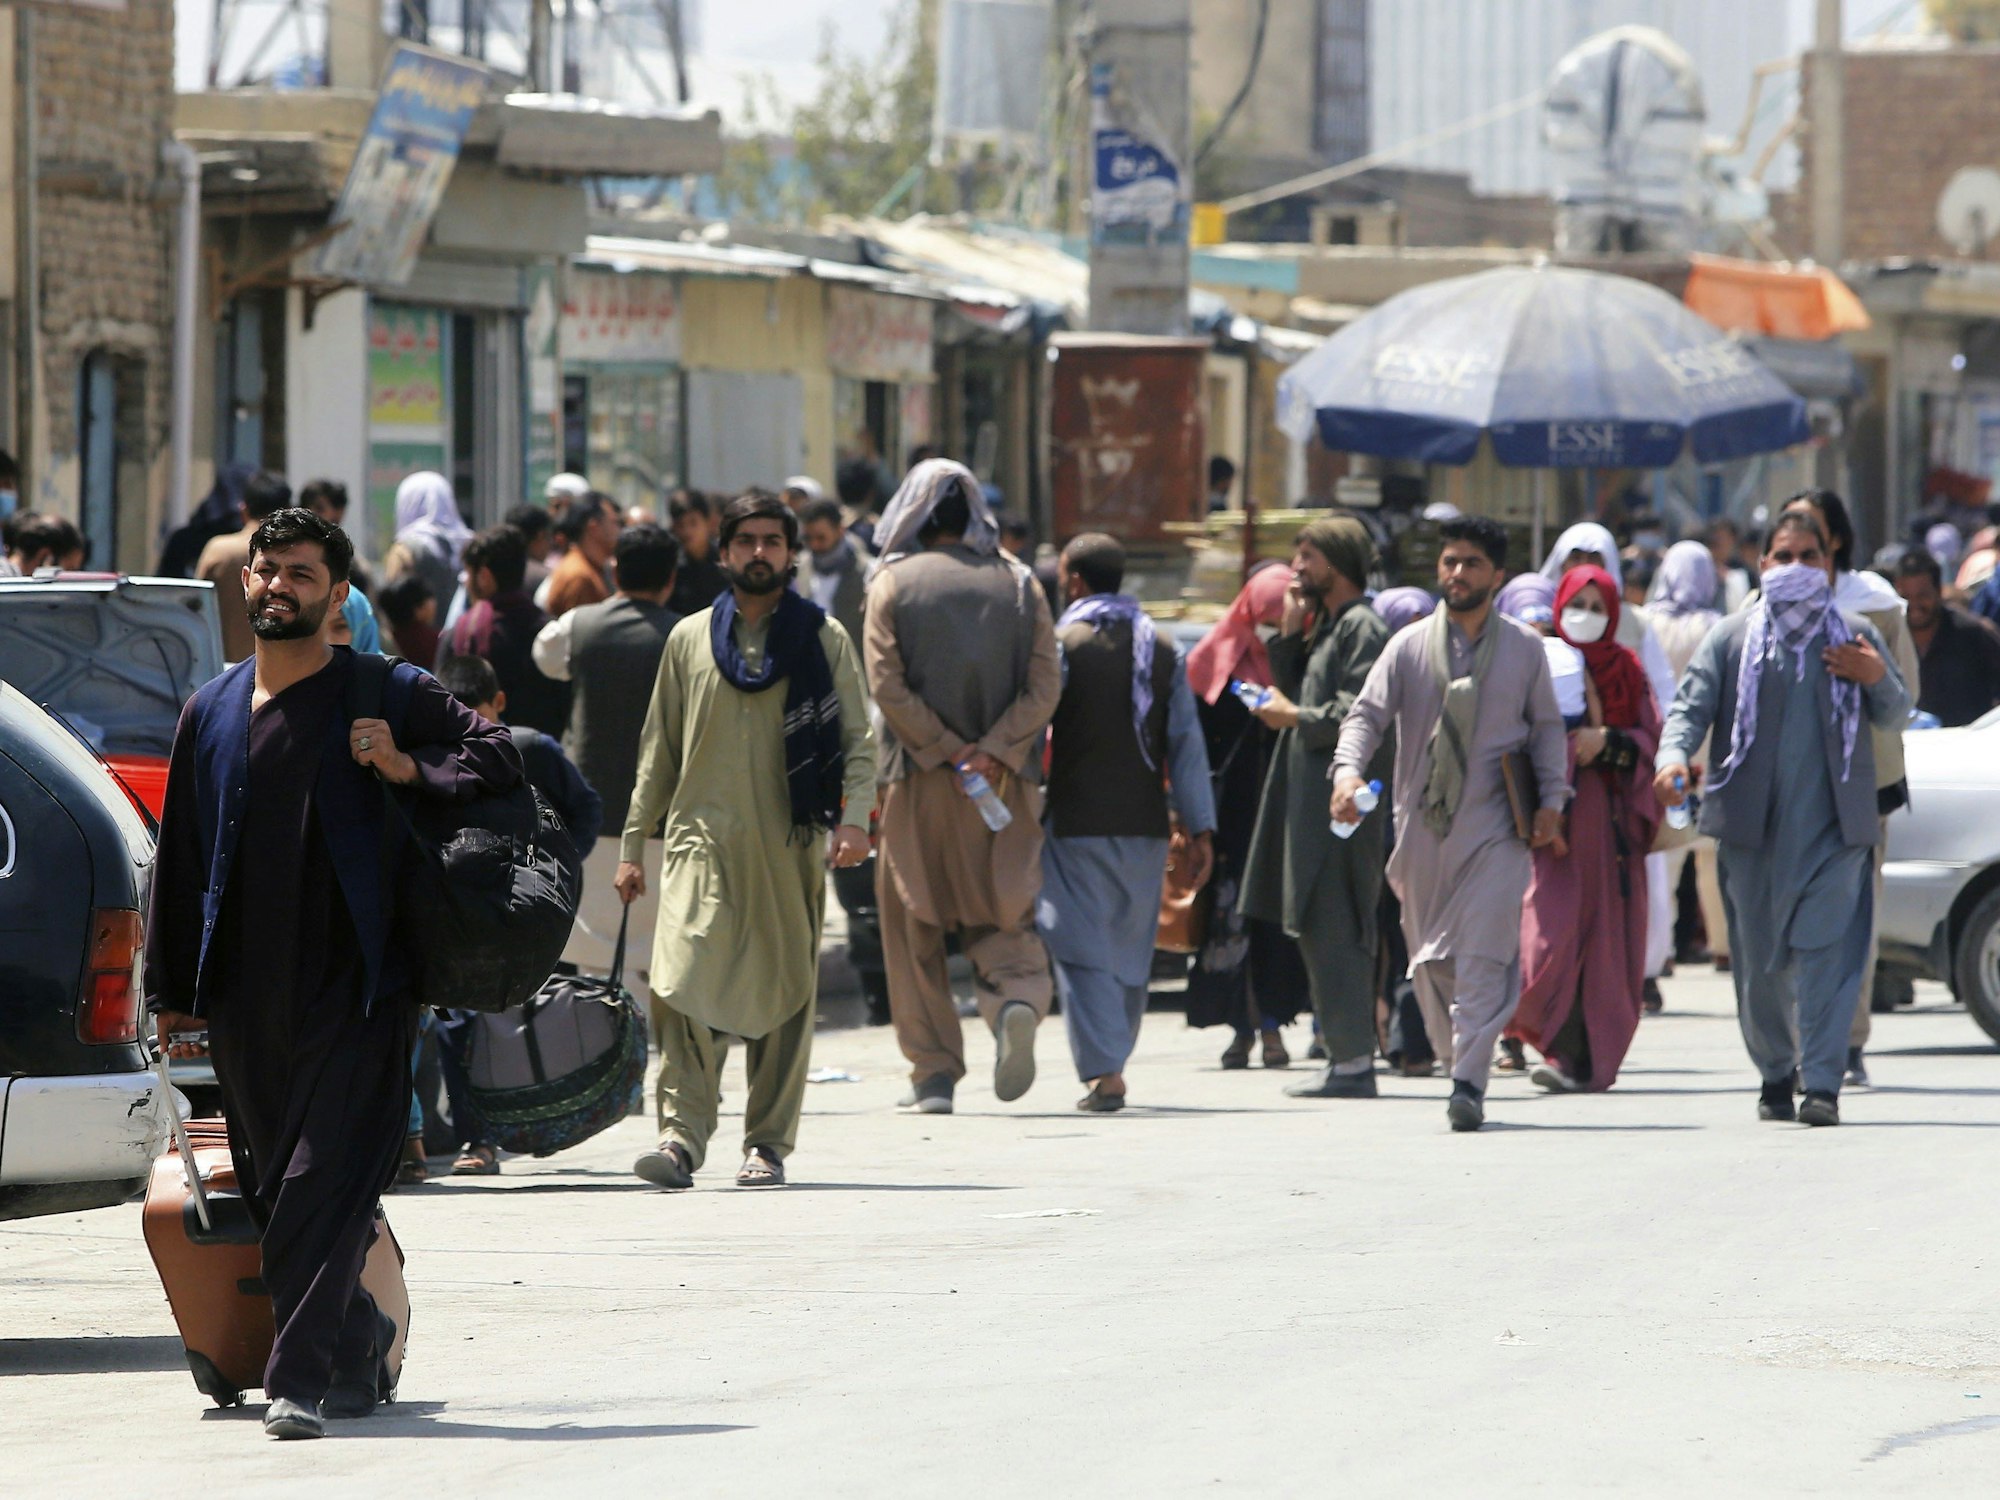 Menschen begeben sich zu einer Militäreinrichtung auf einem Flughafen in Kabul. Foto vom 23. August 2021.